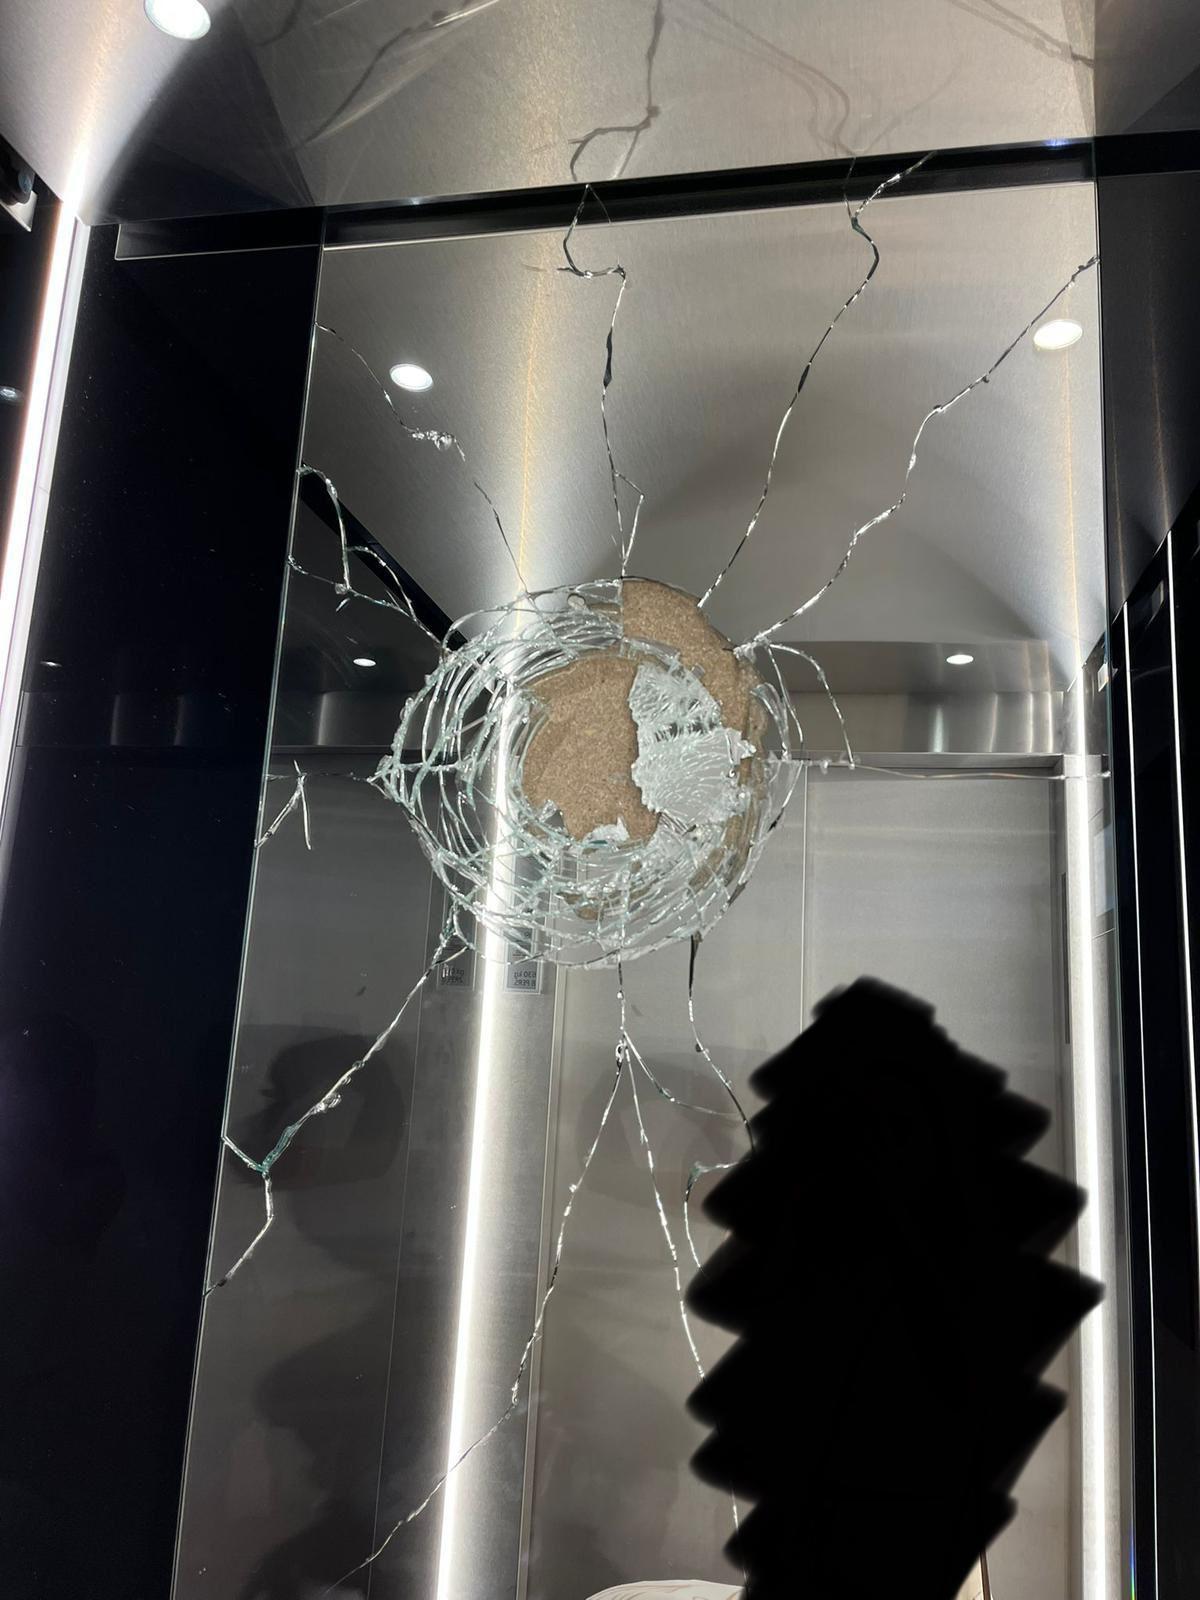 El cristal del ascensor roto